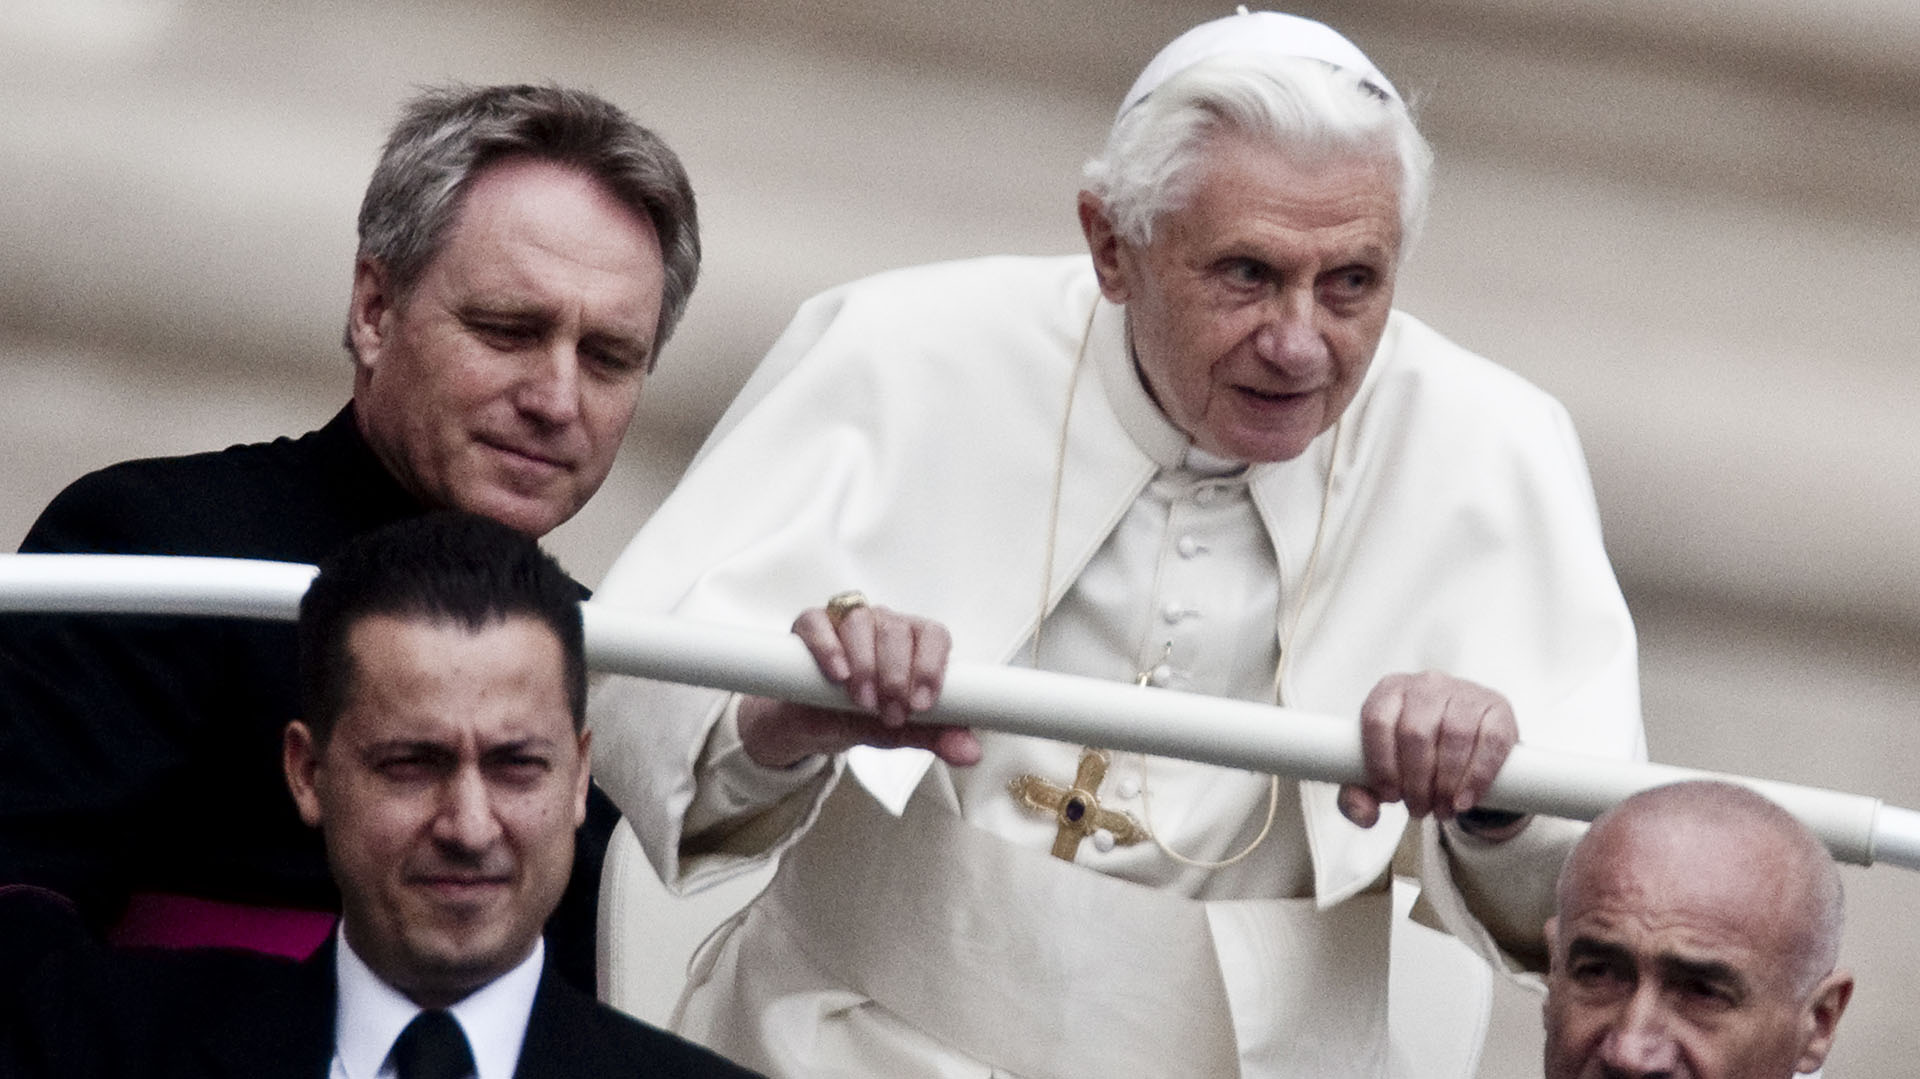 El papa emérito Benedicto XVI, durante una audiencia en la plaza San Pedro cuando aún ejercía como Sumo Pontífice (Alessandra Benedetti/Corbis via Getty Images)